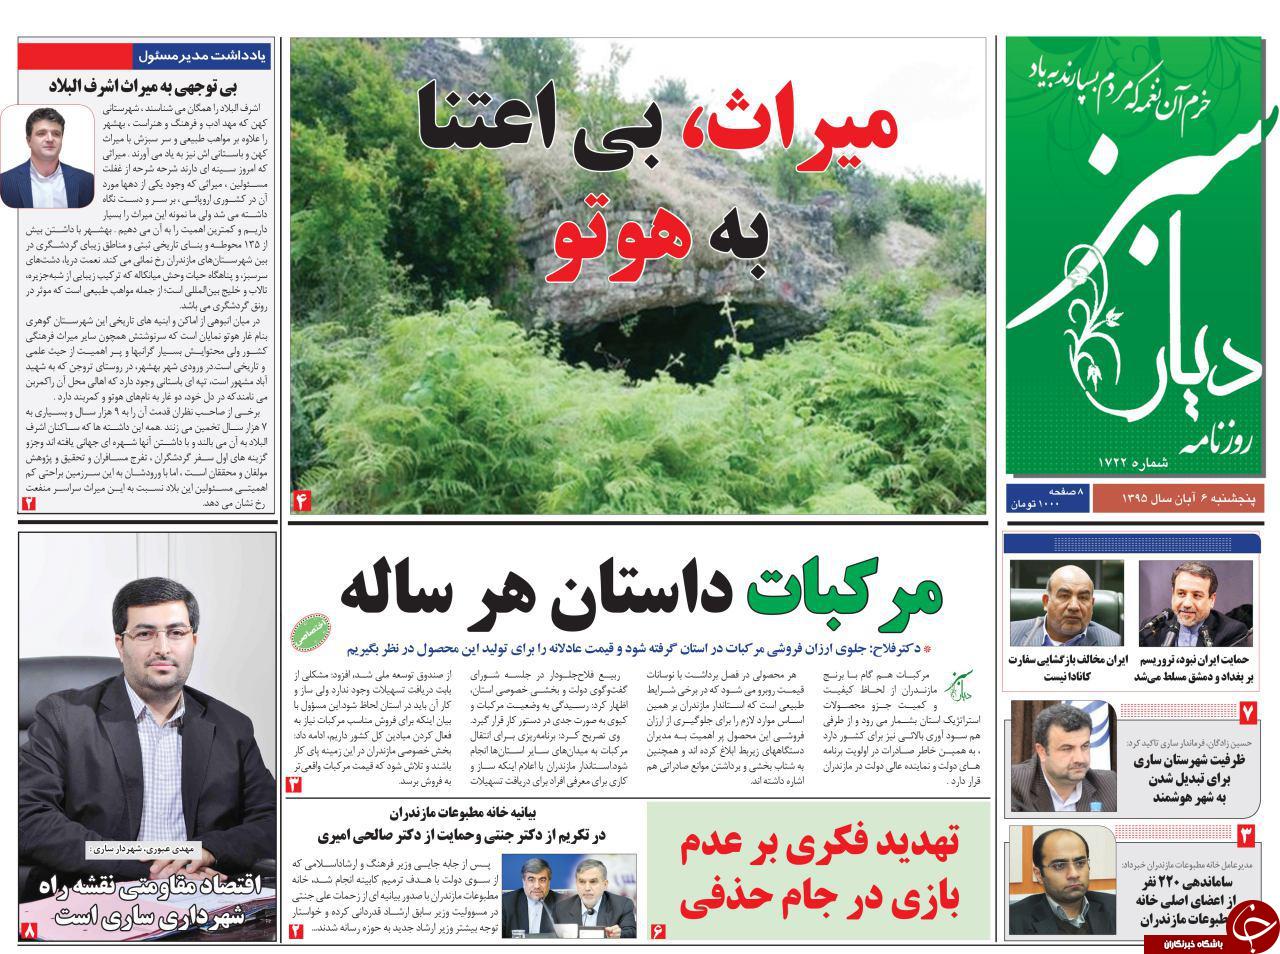 صفحه نخست روزنامه های مازندران پنج شنبه 6 آبان